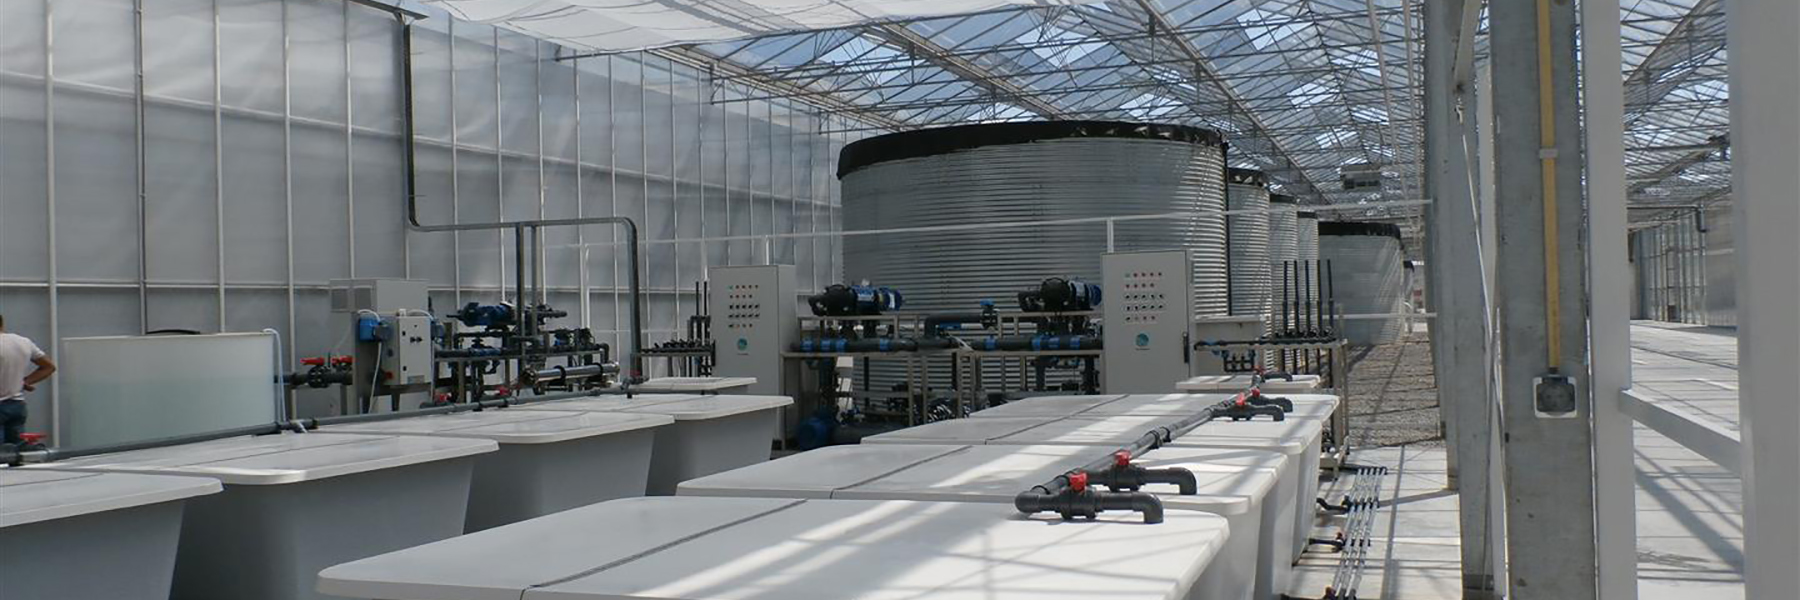 Irrigation mixing tanks